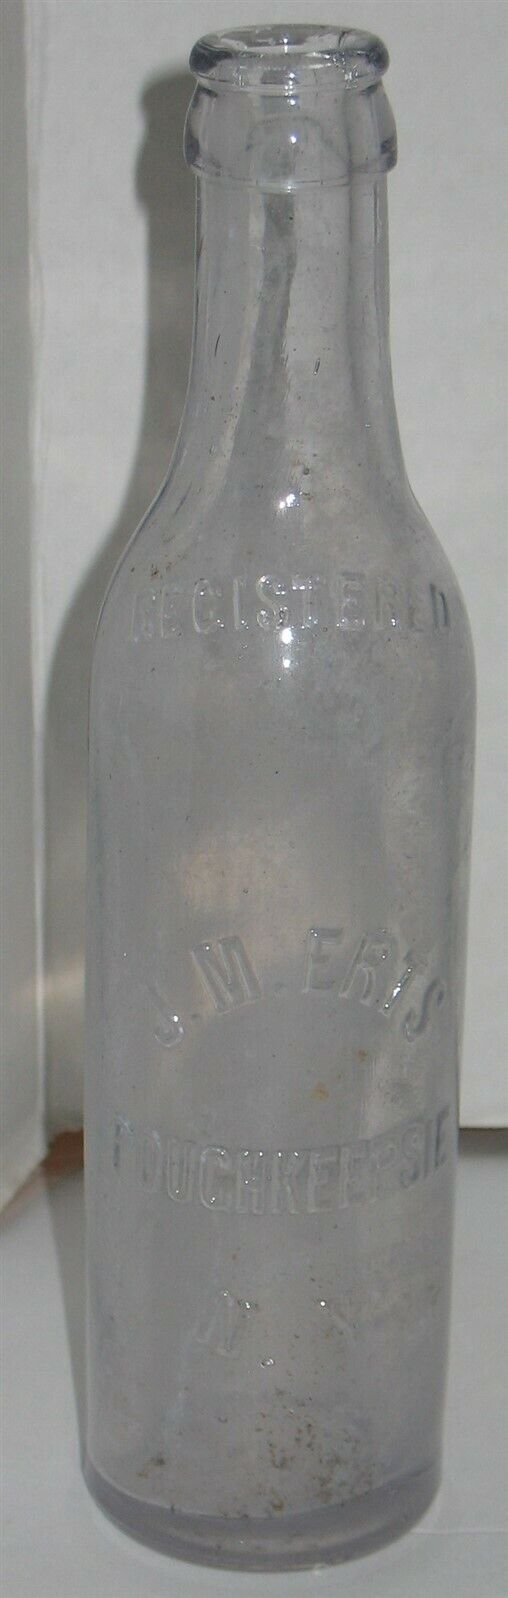 Vintage Clear JM Erts Poughkeepsie NY Glass Bottle Prop Vase Barn Dig Dump